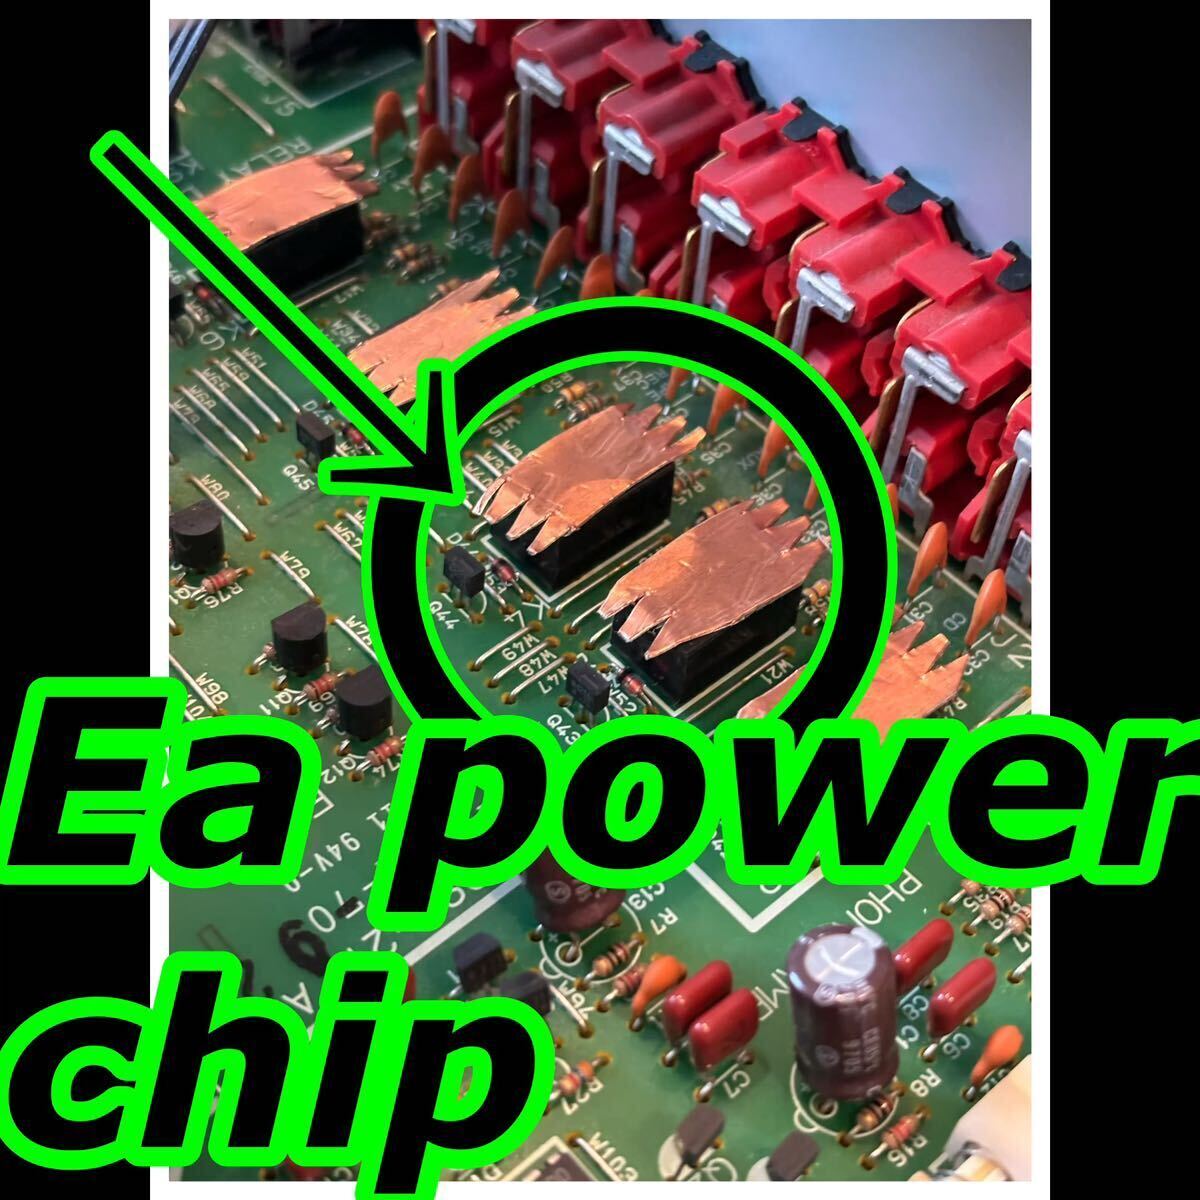 特許庁登録アーシング！新しい発想！オーディオアンプ！電源コード！『Ea power chip』静電気放電により本来の性能を引き出す!2枚セット！_画像2